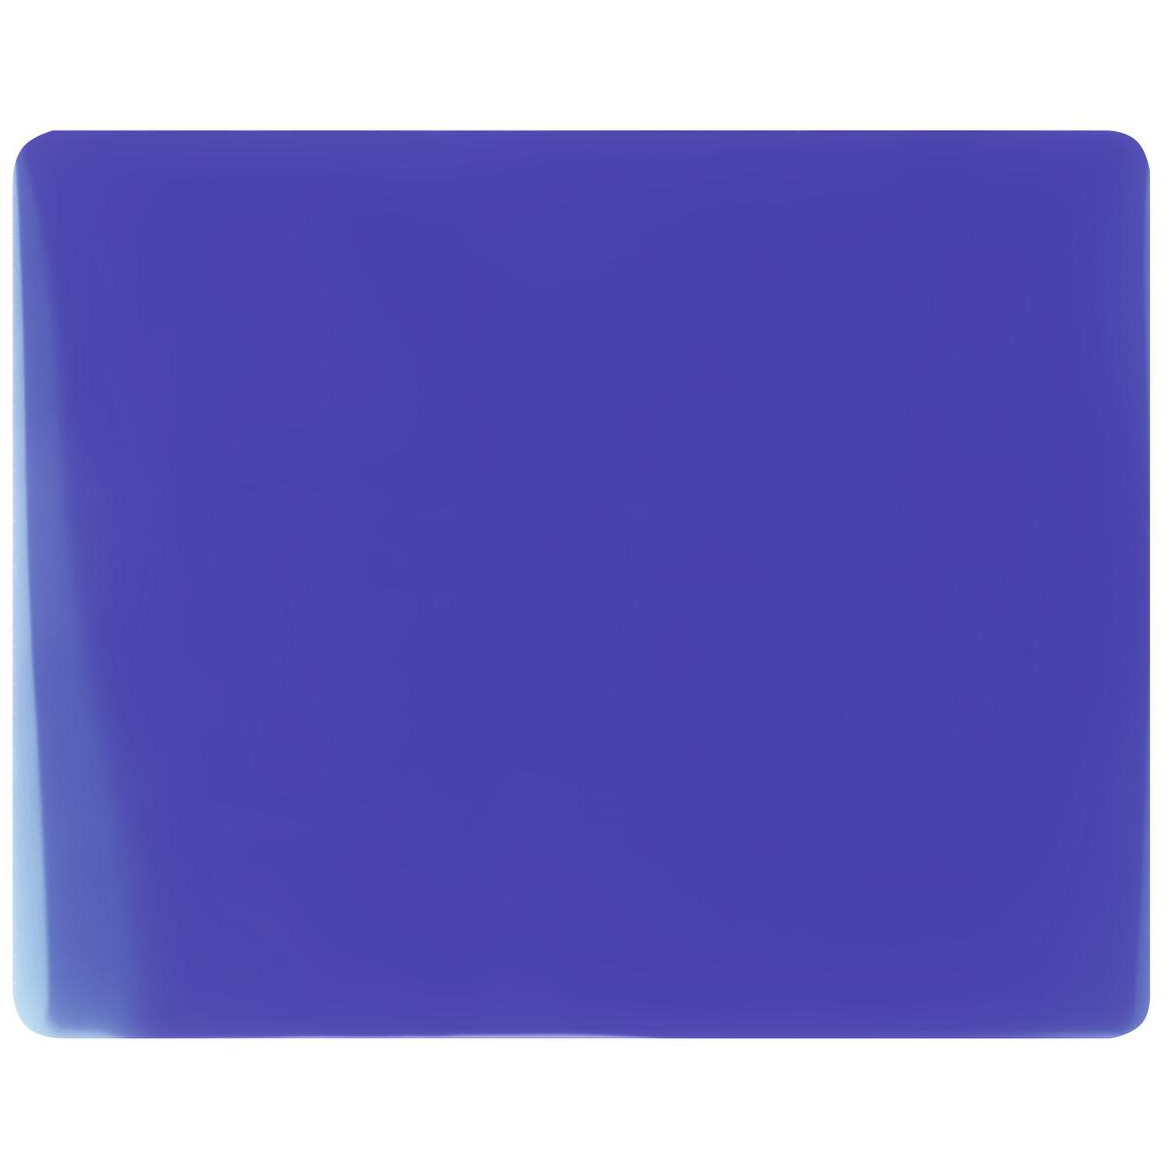 Filtr floodlight modrý, 165x132mm